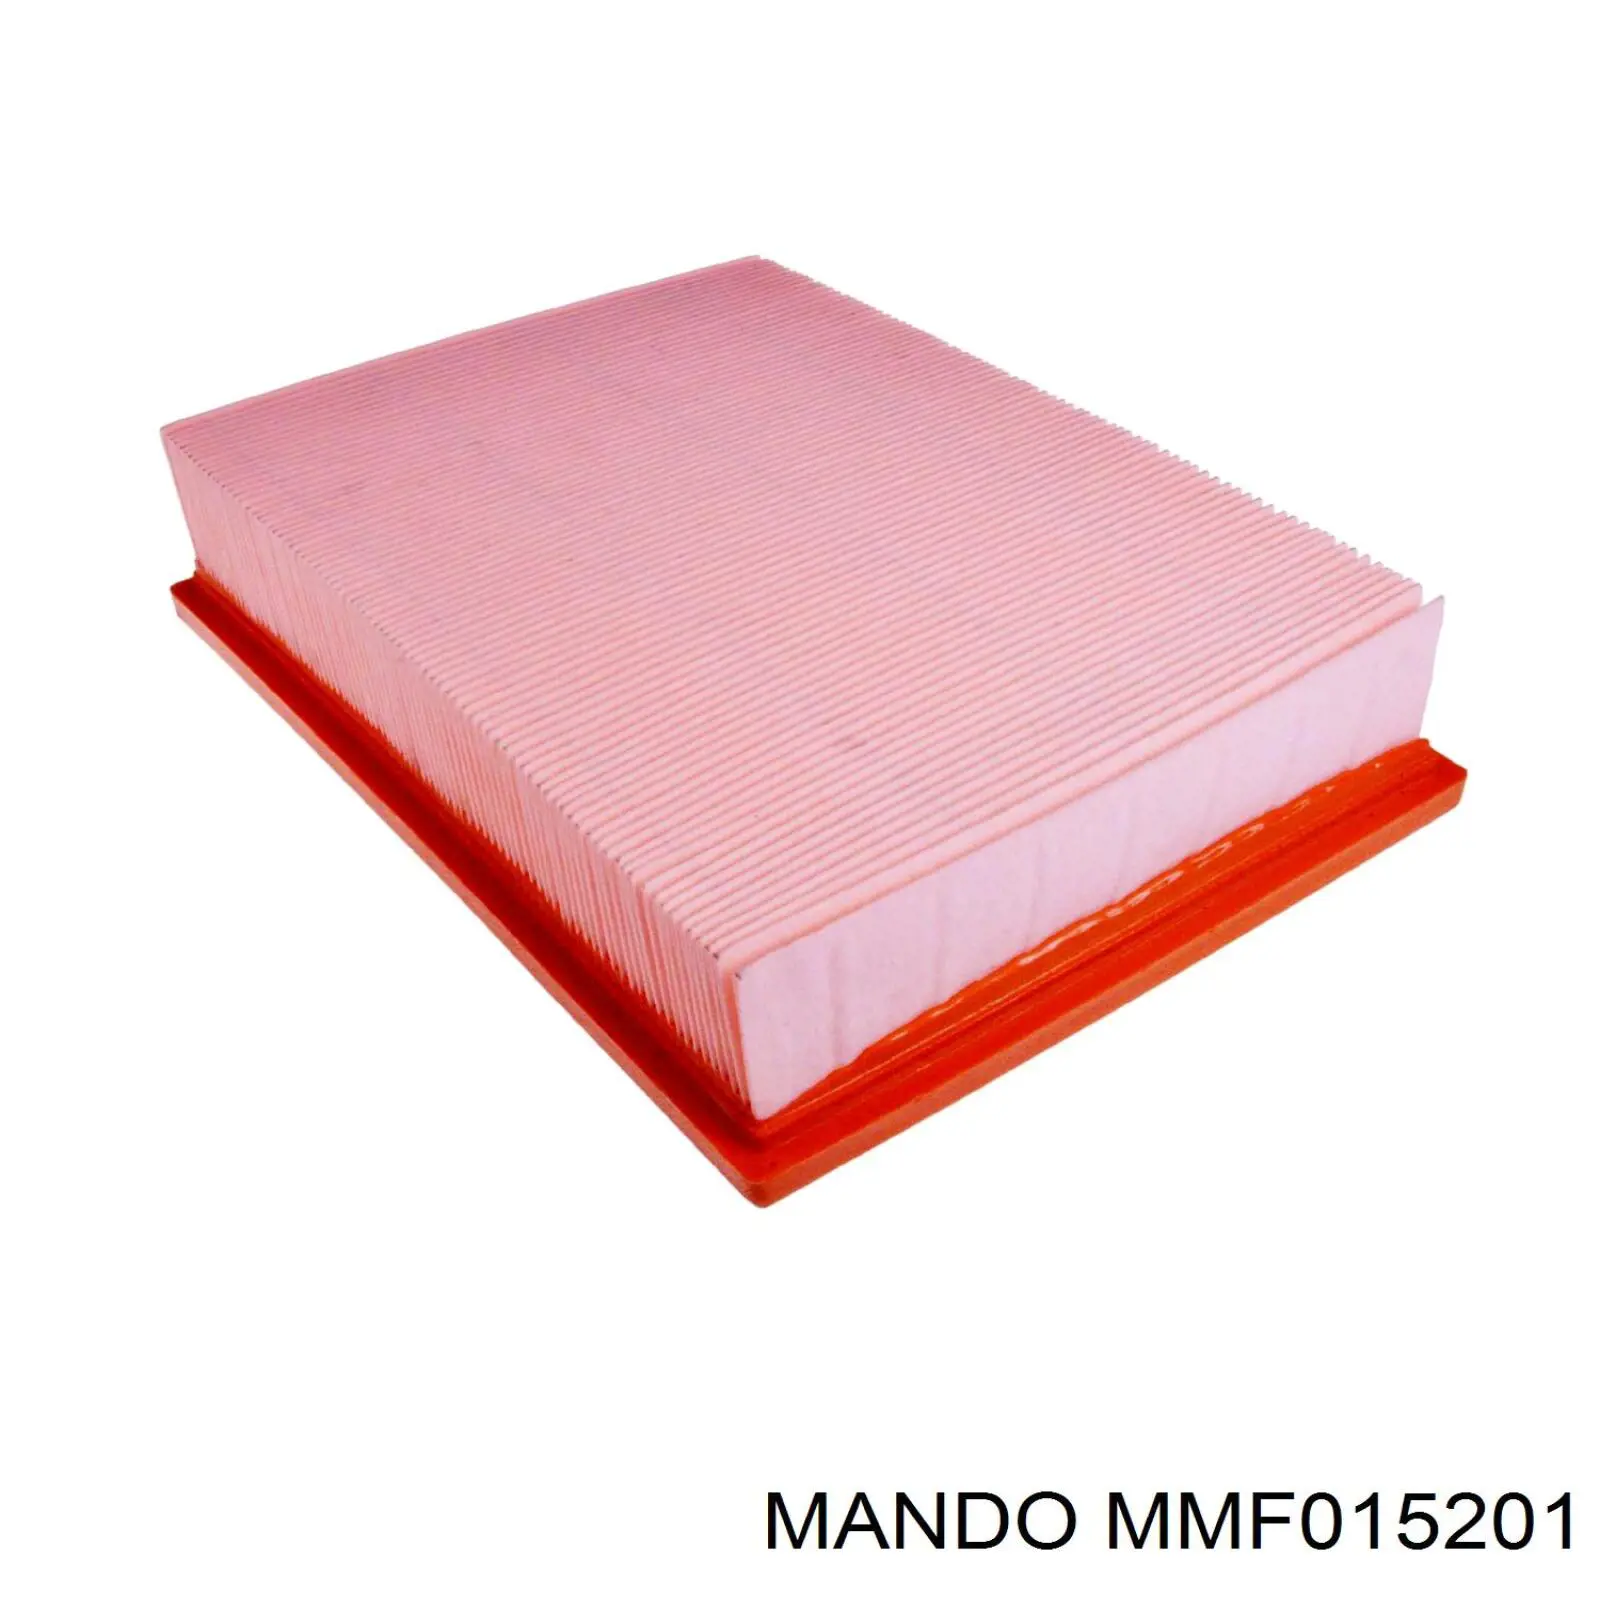 MMF015201 Mando фільтр повітряний